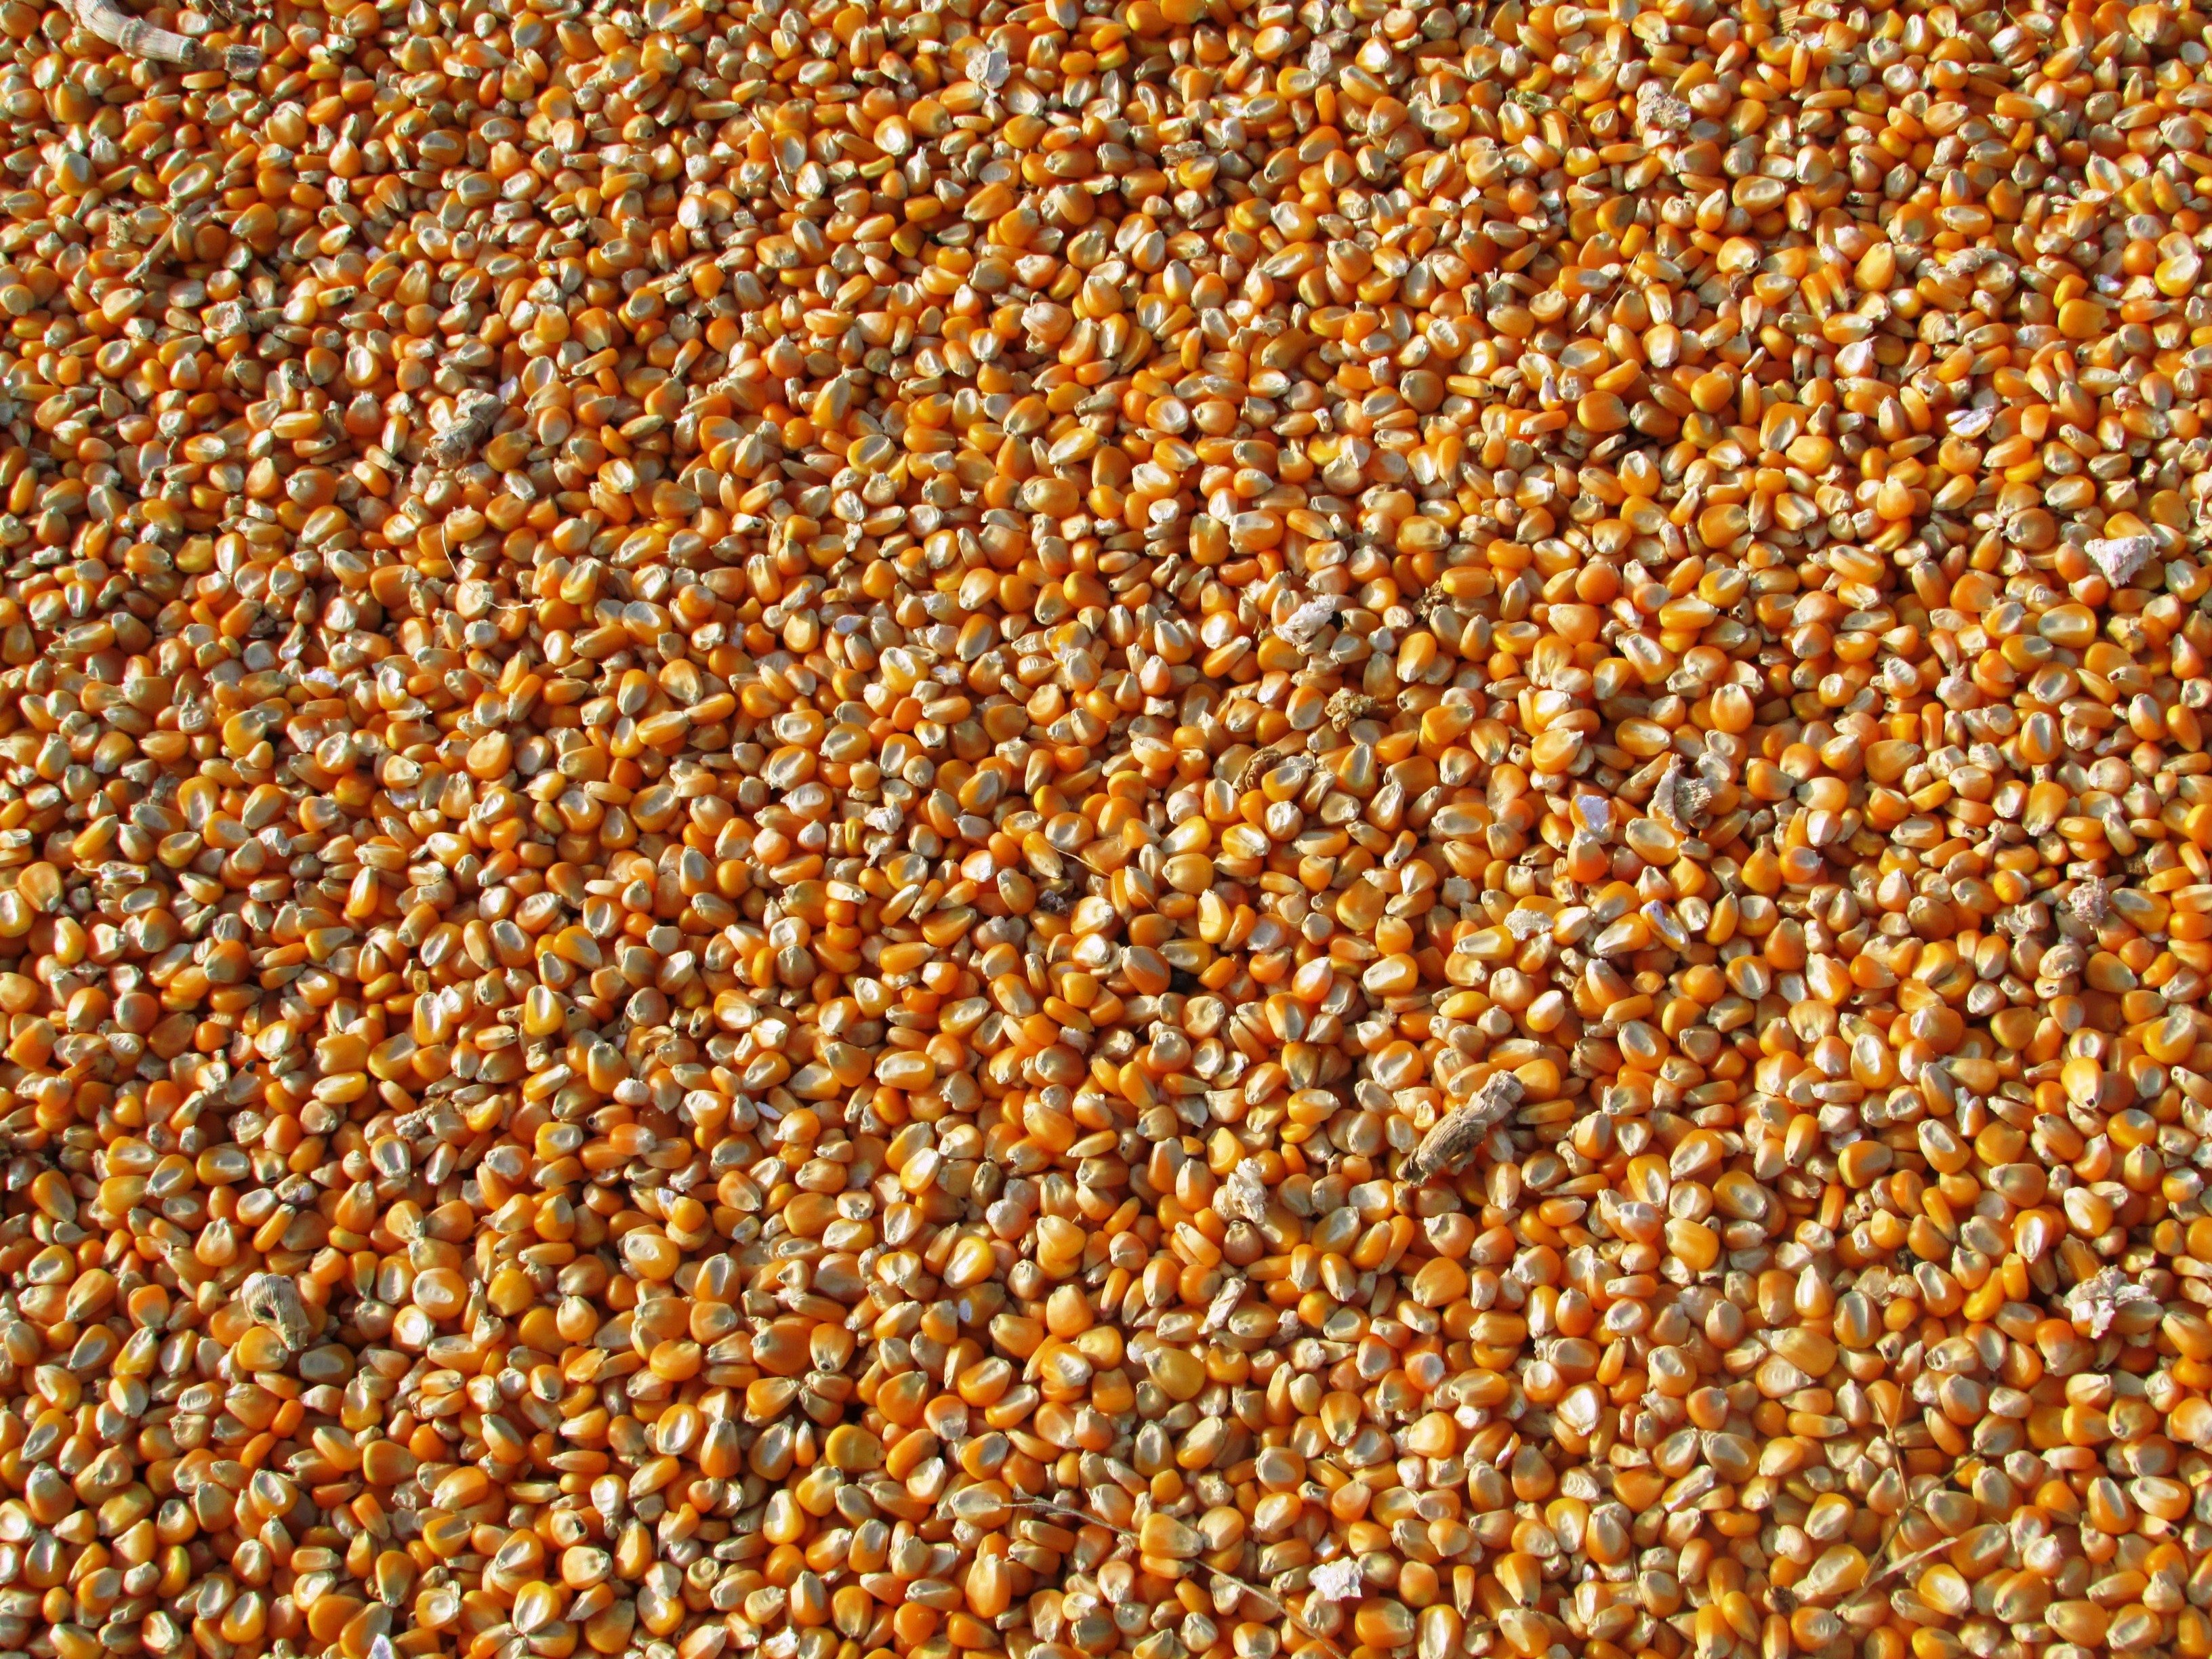 corn-dried-corn-seeds-food-60507